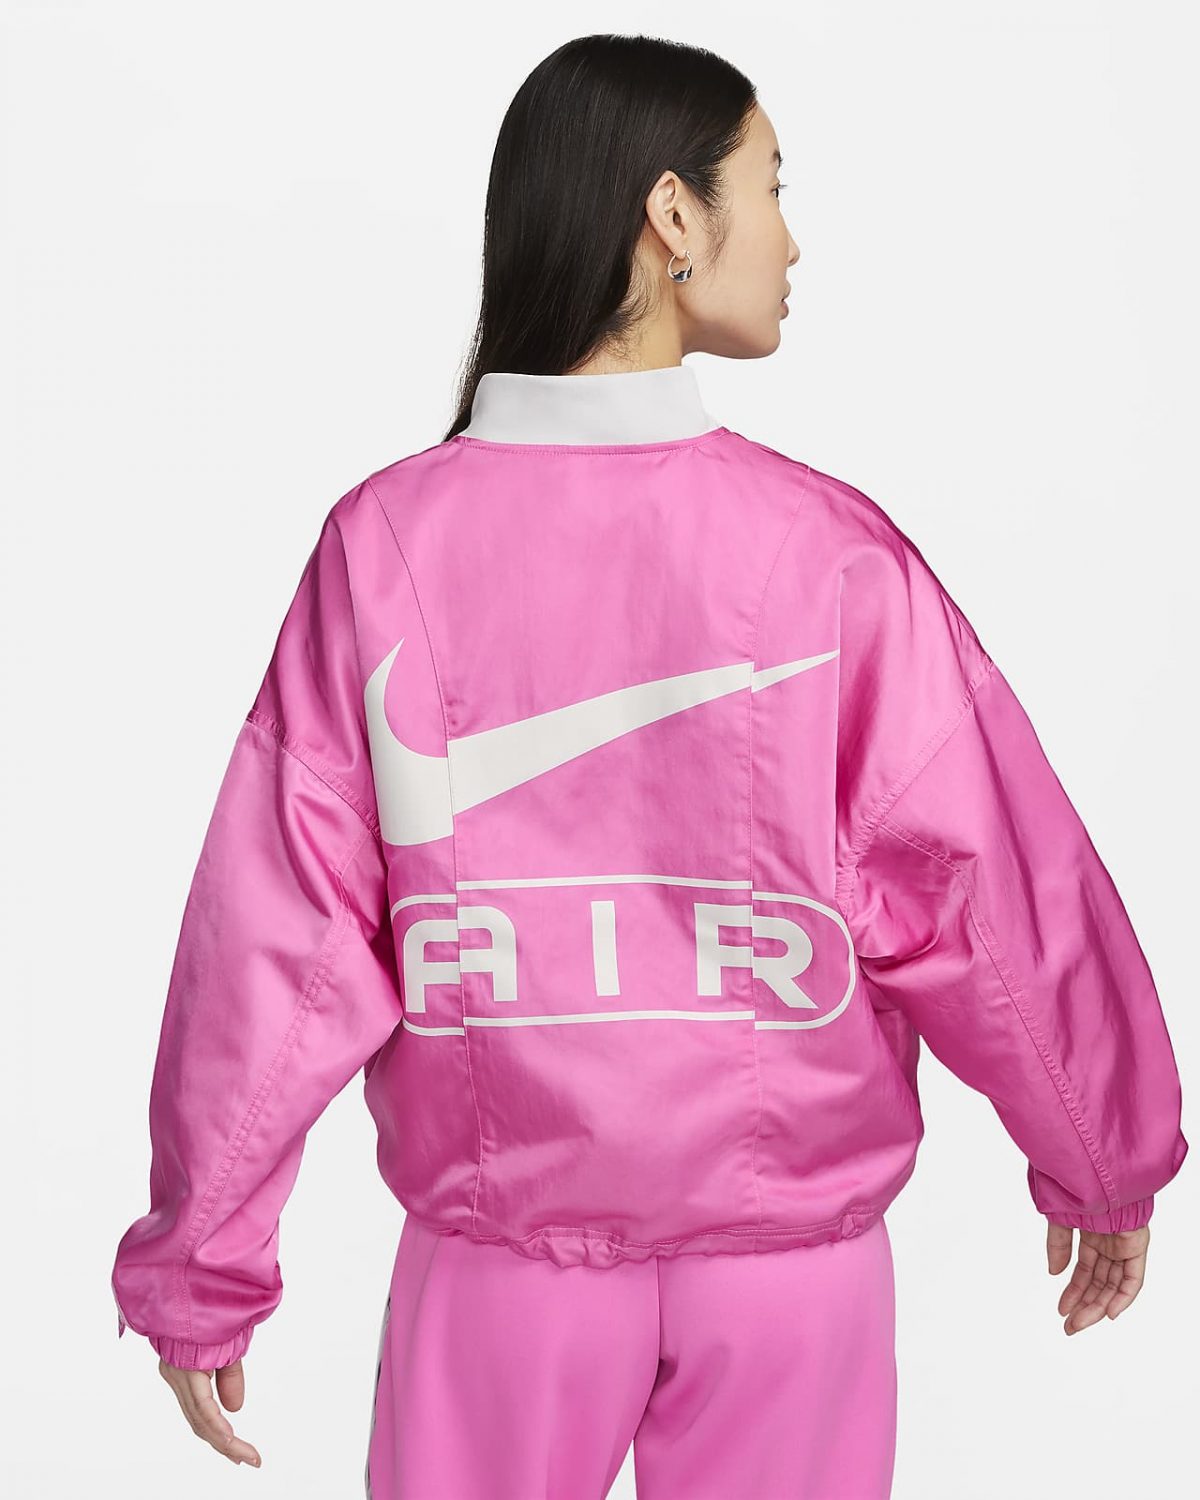 Женская куртка Nike Air фотография